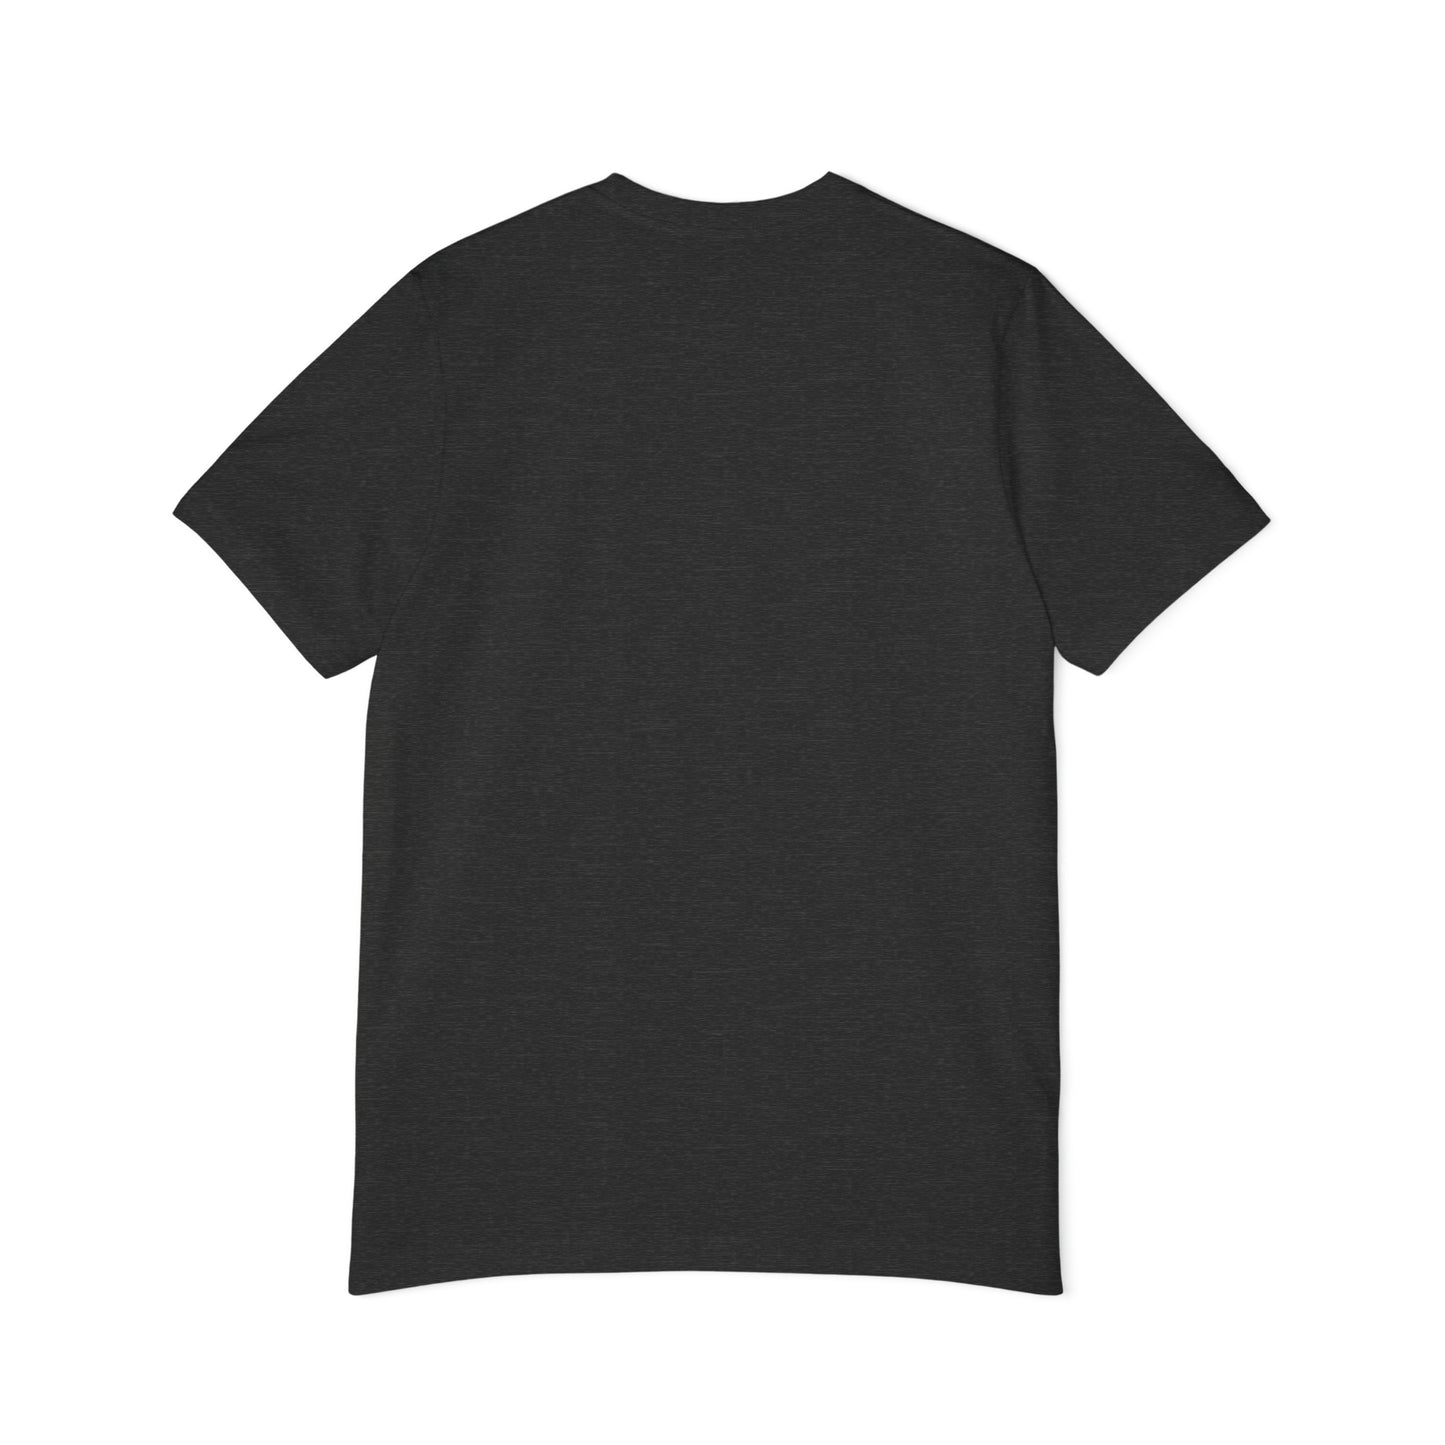 Unisex Short-Sleeve Jersey T-Shirt